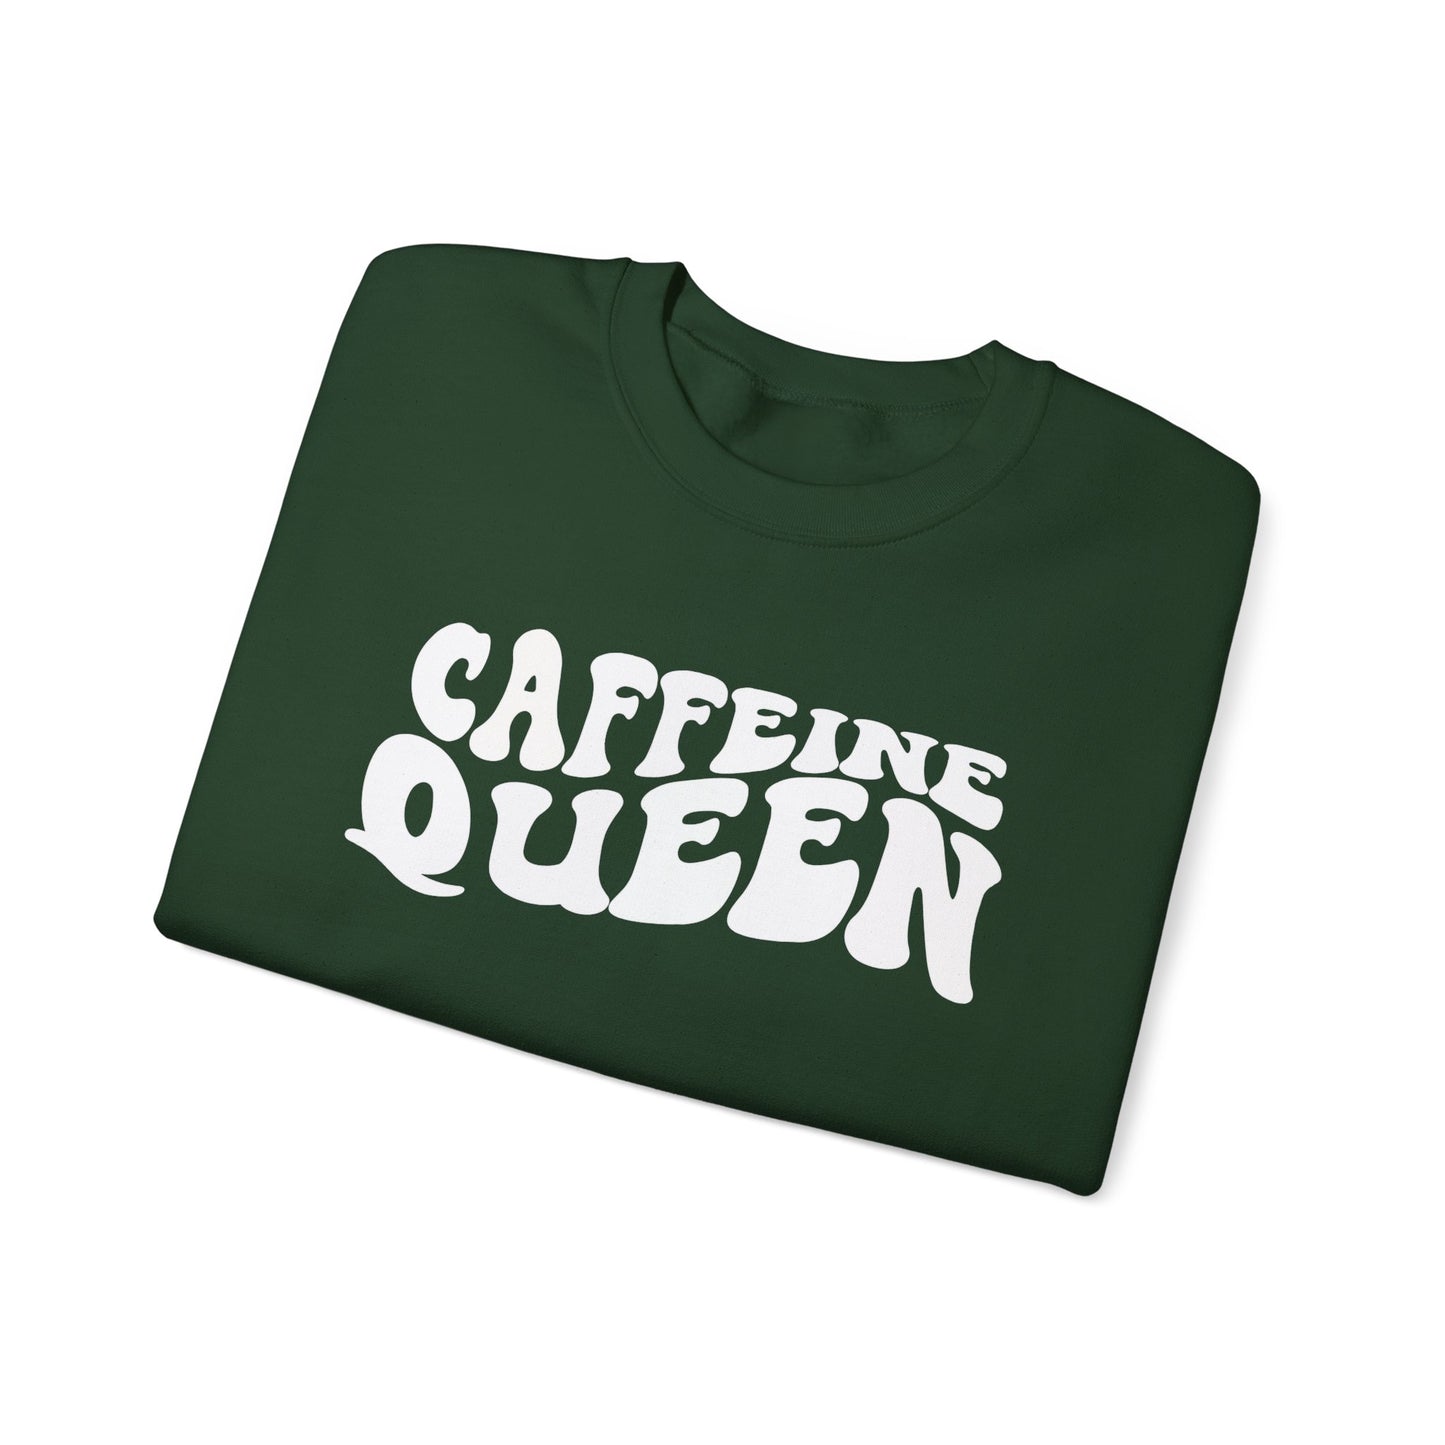 Caffeine Queen Crewneck Sweatshirt